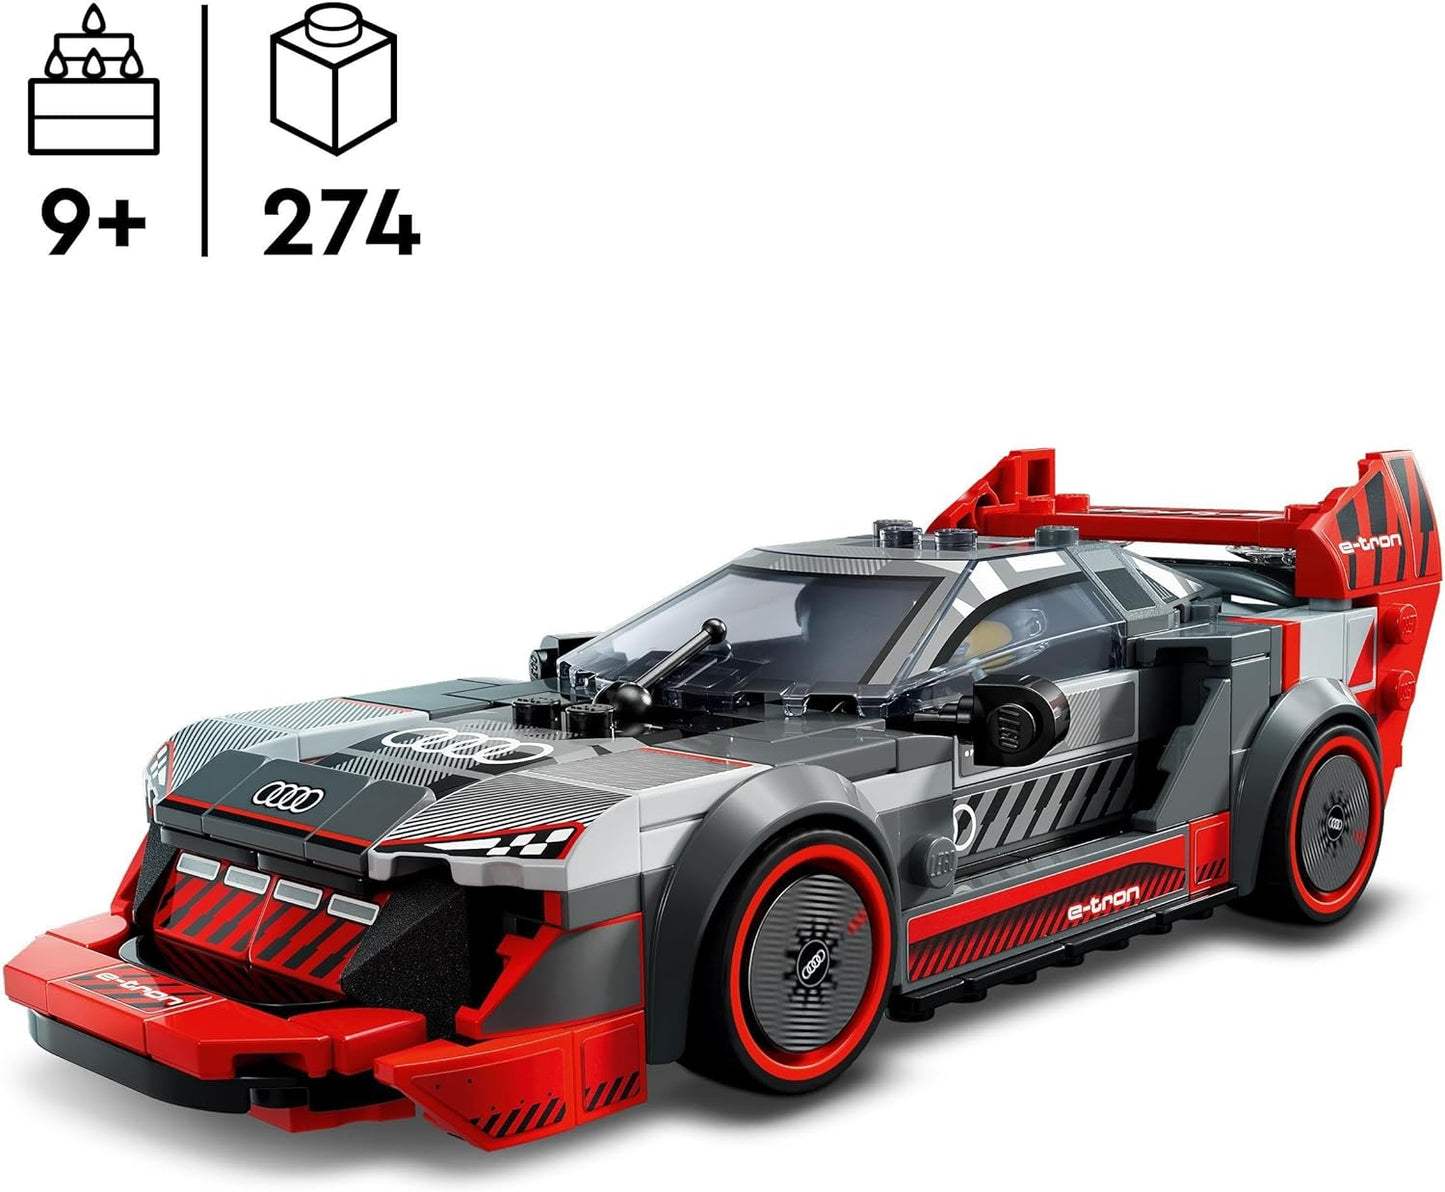 LEGO Speed Champions Audi S1 e-tron quattro Carro de corrida, veículo de brinquedo, conjunto de modelos edificáveis para crianças, ideia de presente para exibição jogável para meninos e meninas de mais de 9 anos